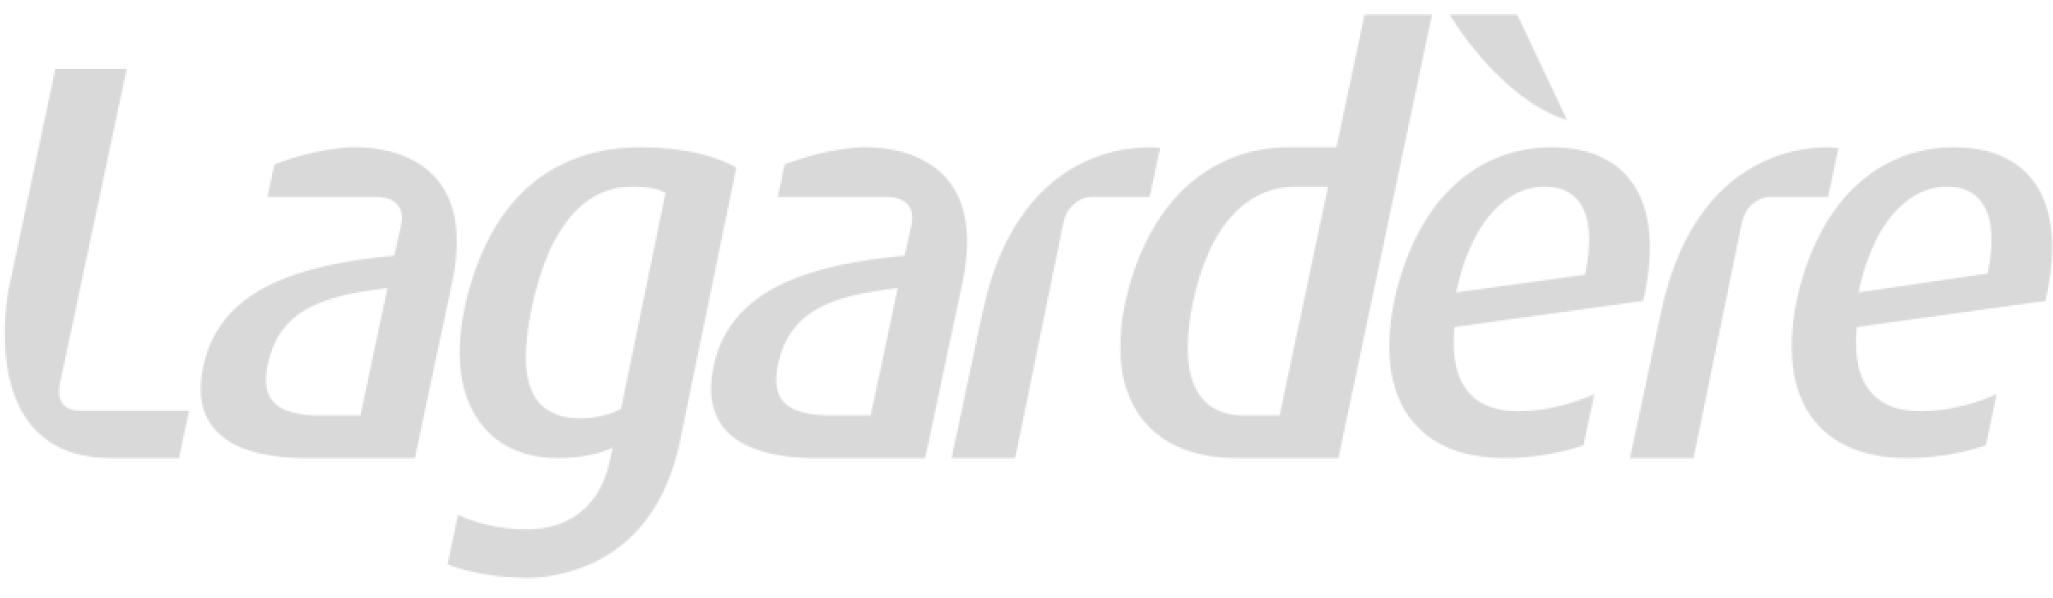 Lagardère logo white